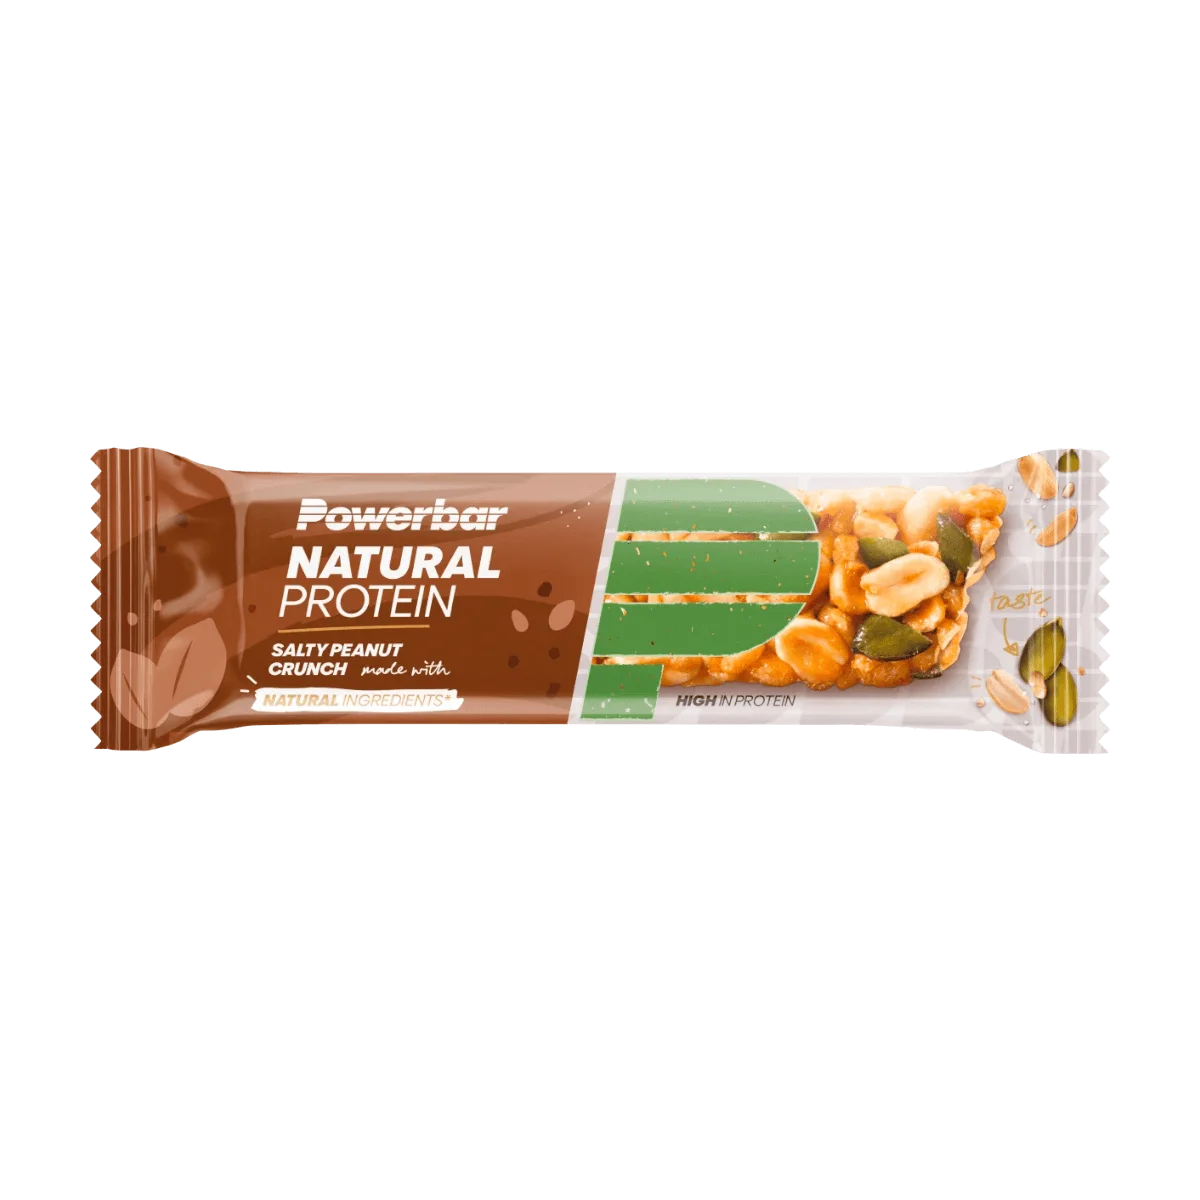 PowerBar Proteinriegel 30% Natural Protein, Salty Peanut Crunch, 40 g